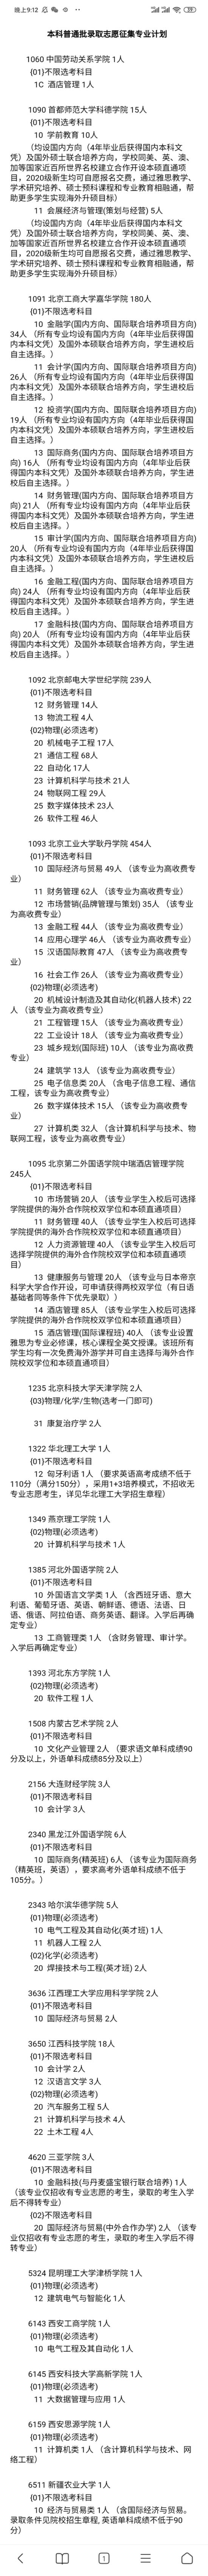 2020年北京军校分数_北京2020年投档分已出,531-540分能进入的学校已整理(2)